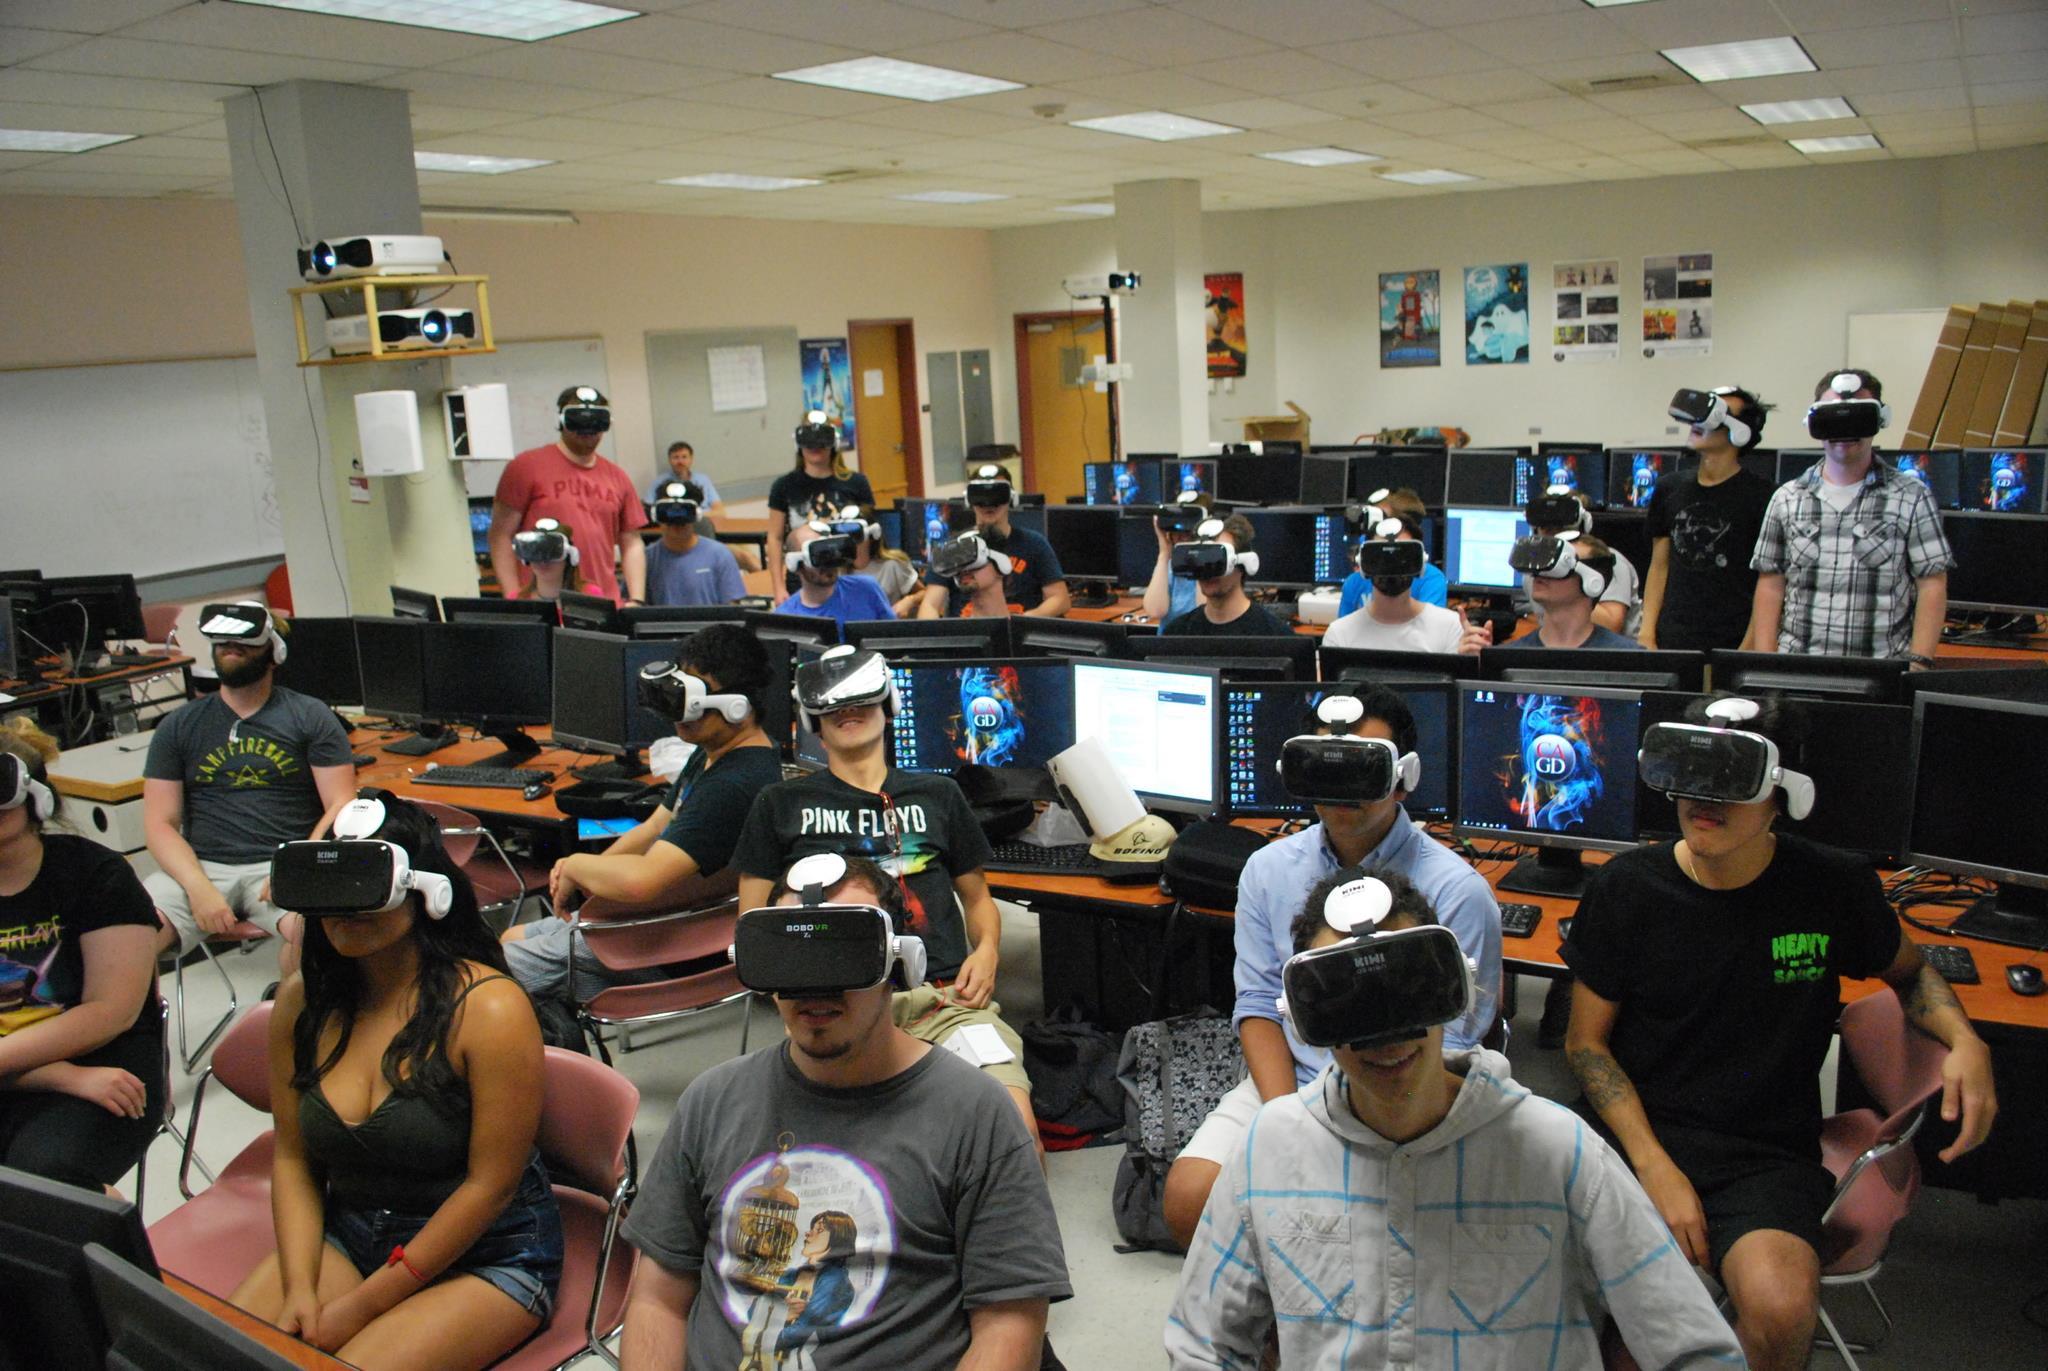 Vr класс. VR классы. Учебный класс VR. VR класс в университете. VR лаборатория в вузе.